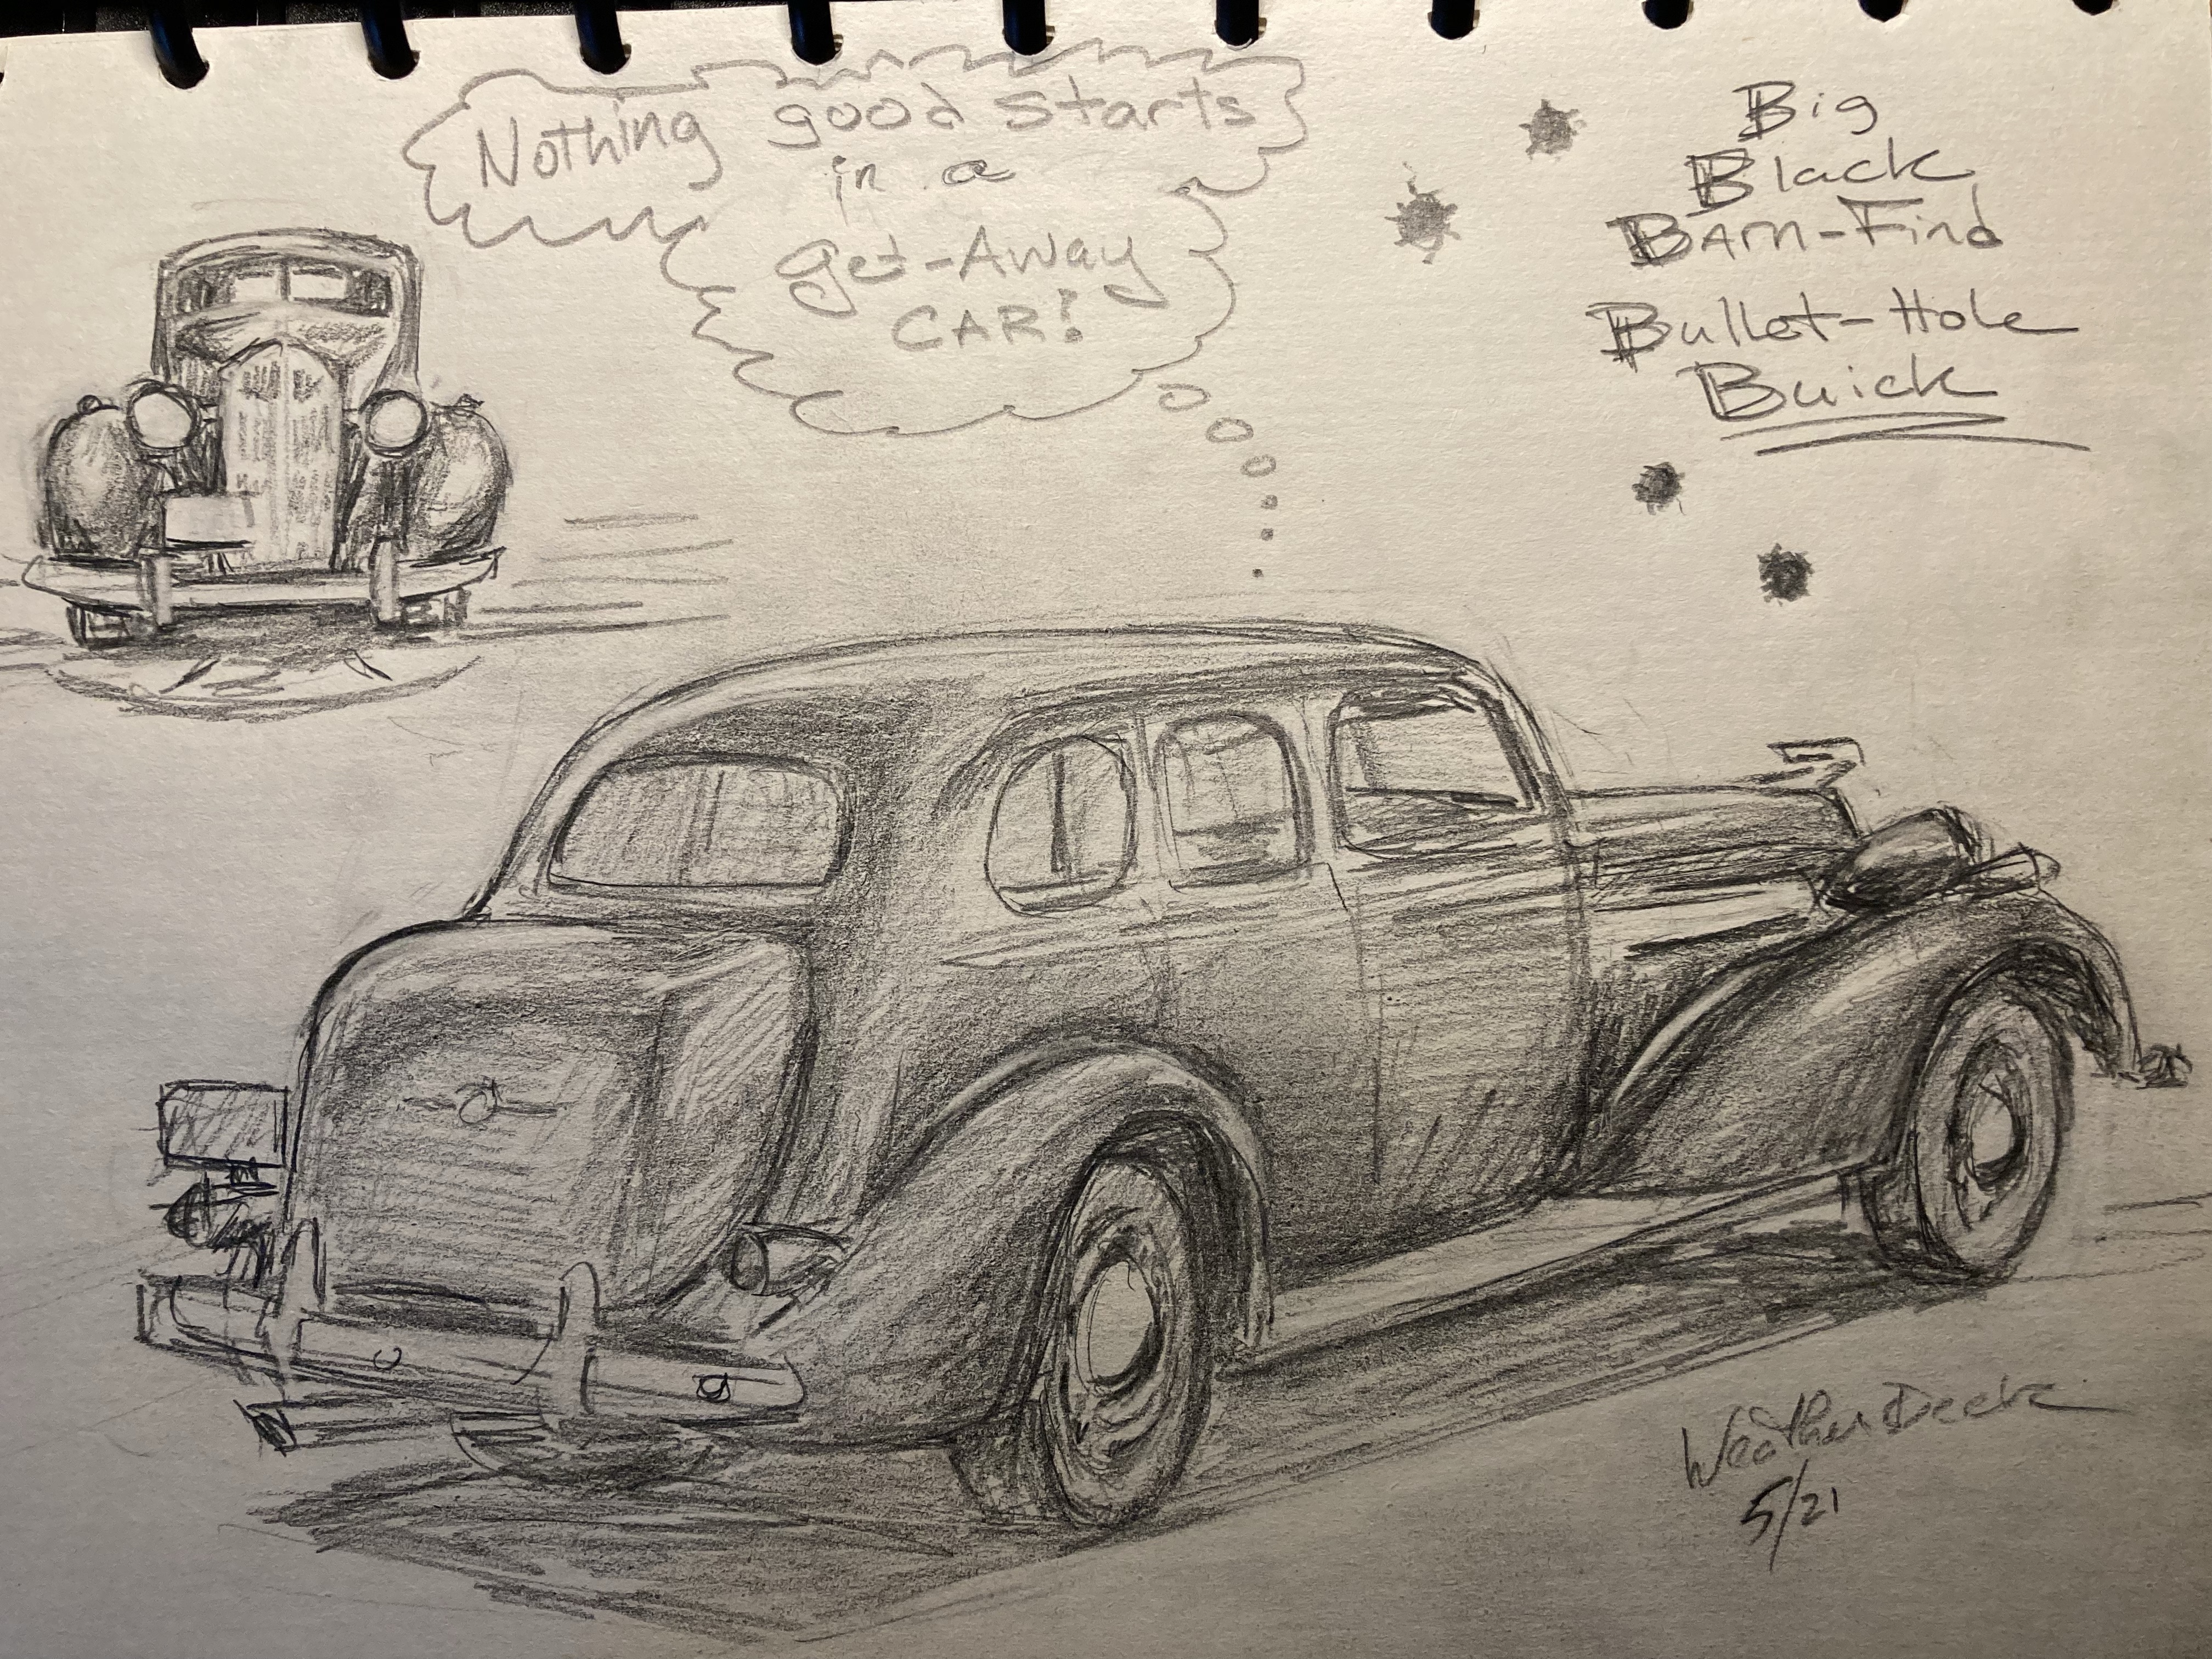 Random Sketch: The Getaway Car